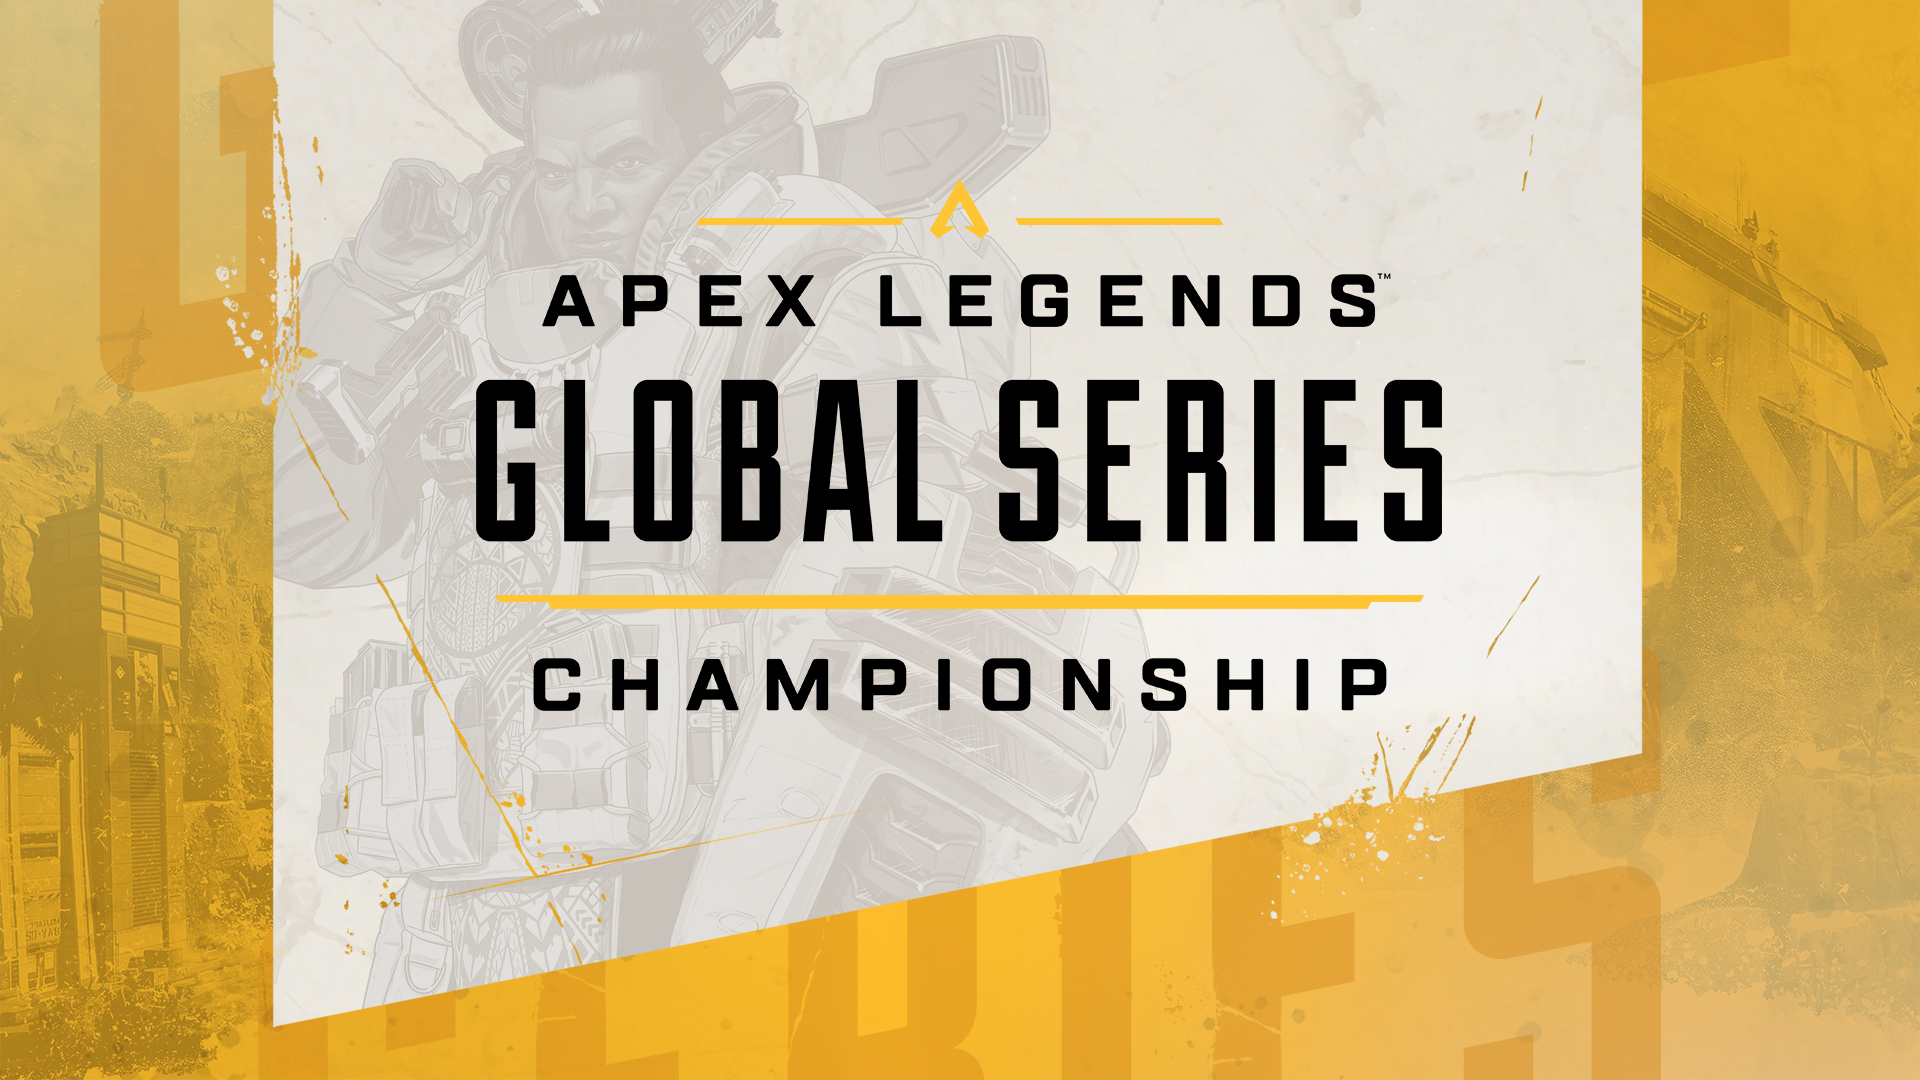 Tout sur l'Apex Legends Global Series Championship dévoilé, record d